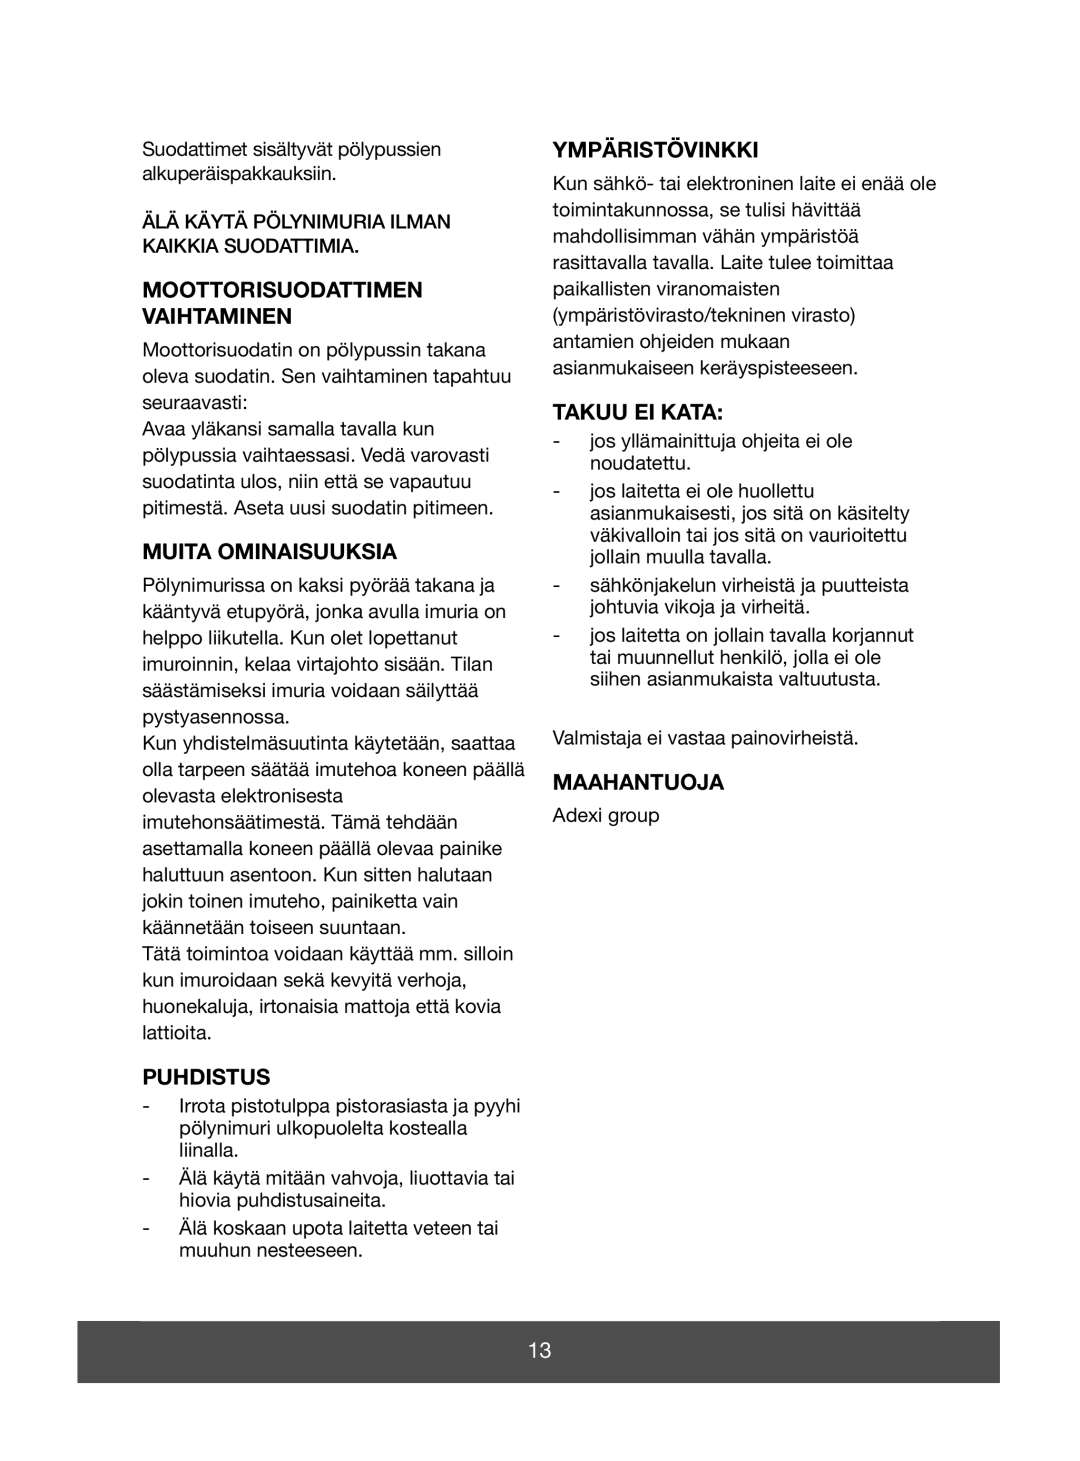 Melissa 640-089 manual Moottorisuodattimen Vaihtaminen, Muita Ominaisuuksia, Puhdistus, Ympäristövinkki, Takuu Ei Kata 